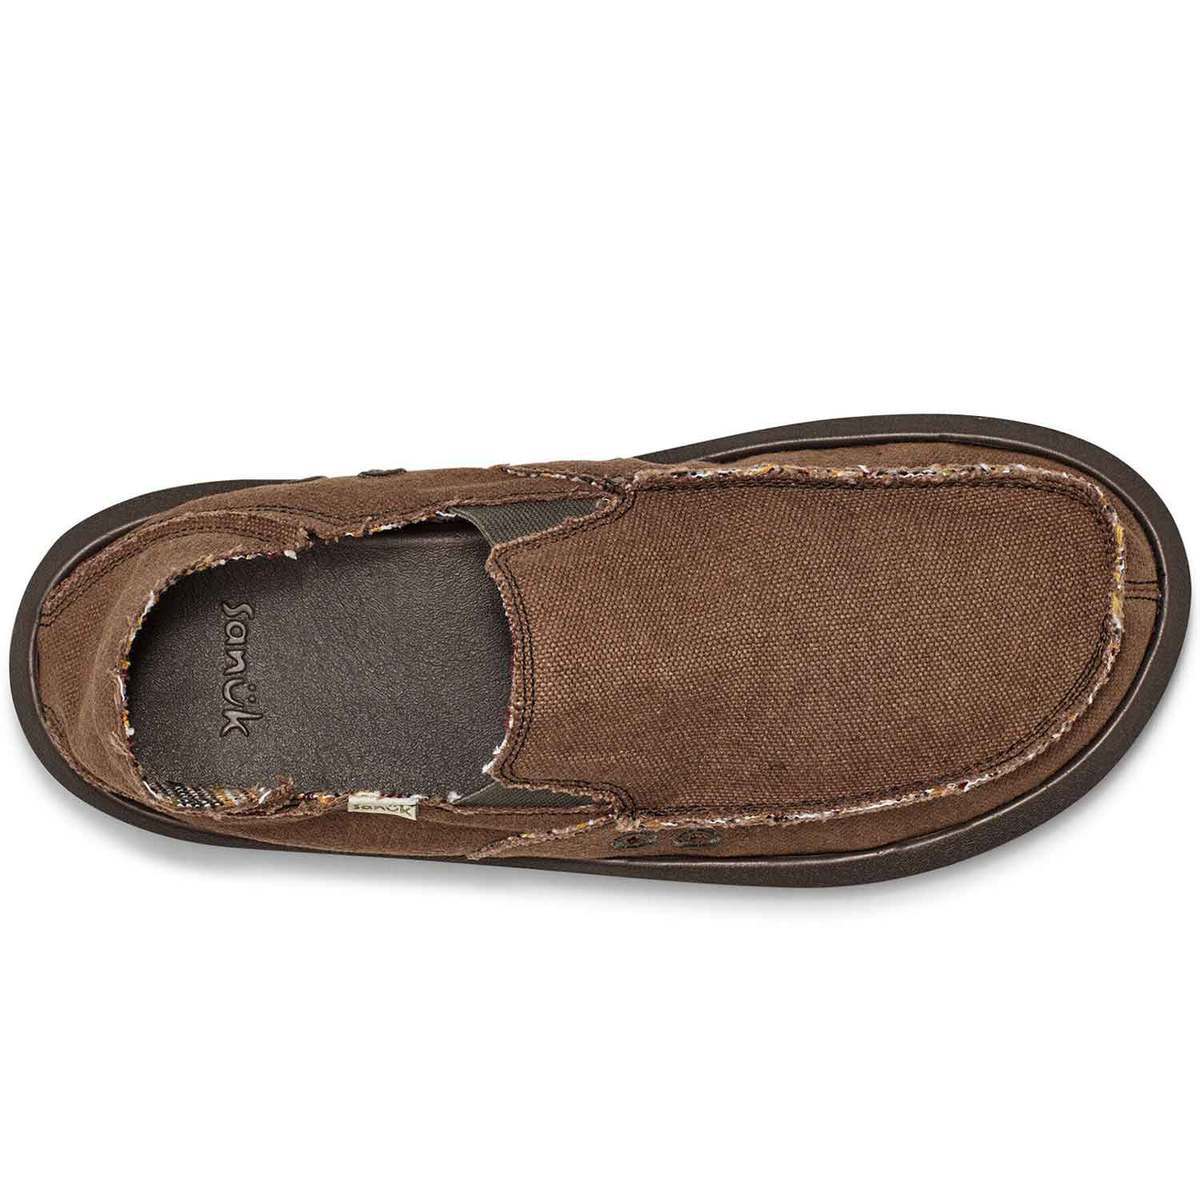 Sanuk Men's Vagabond ST Hemp Casual Shoes - Brown - Size 13 - Brown 13 ...